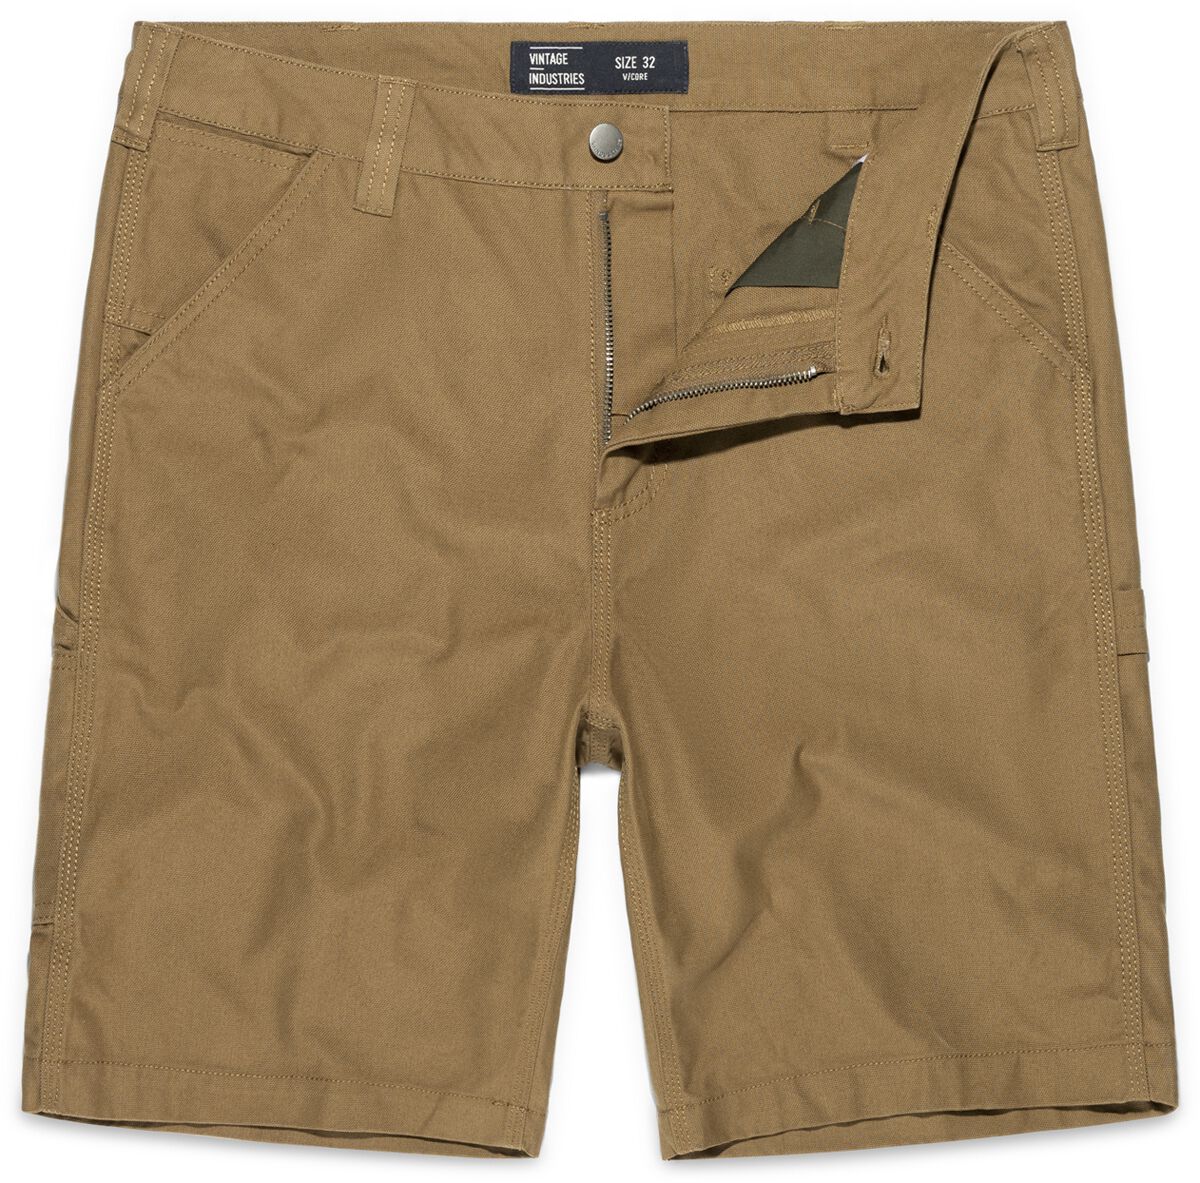 Vintage Industries Dayton Shorts Short beige in 34